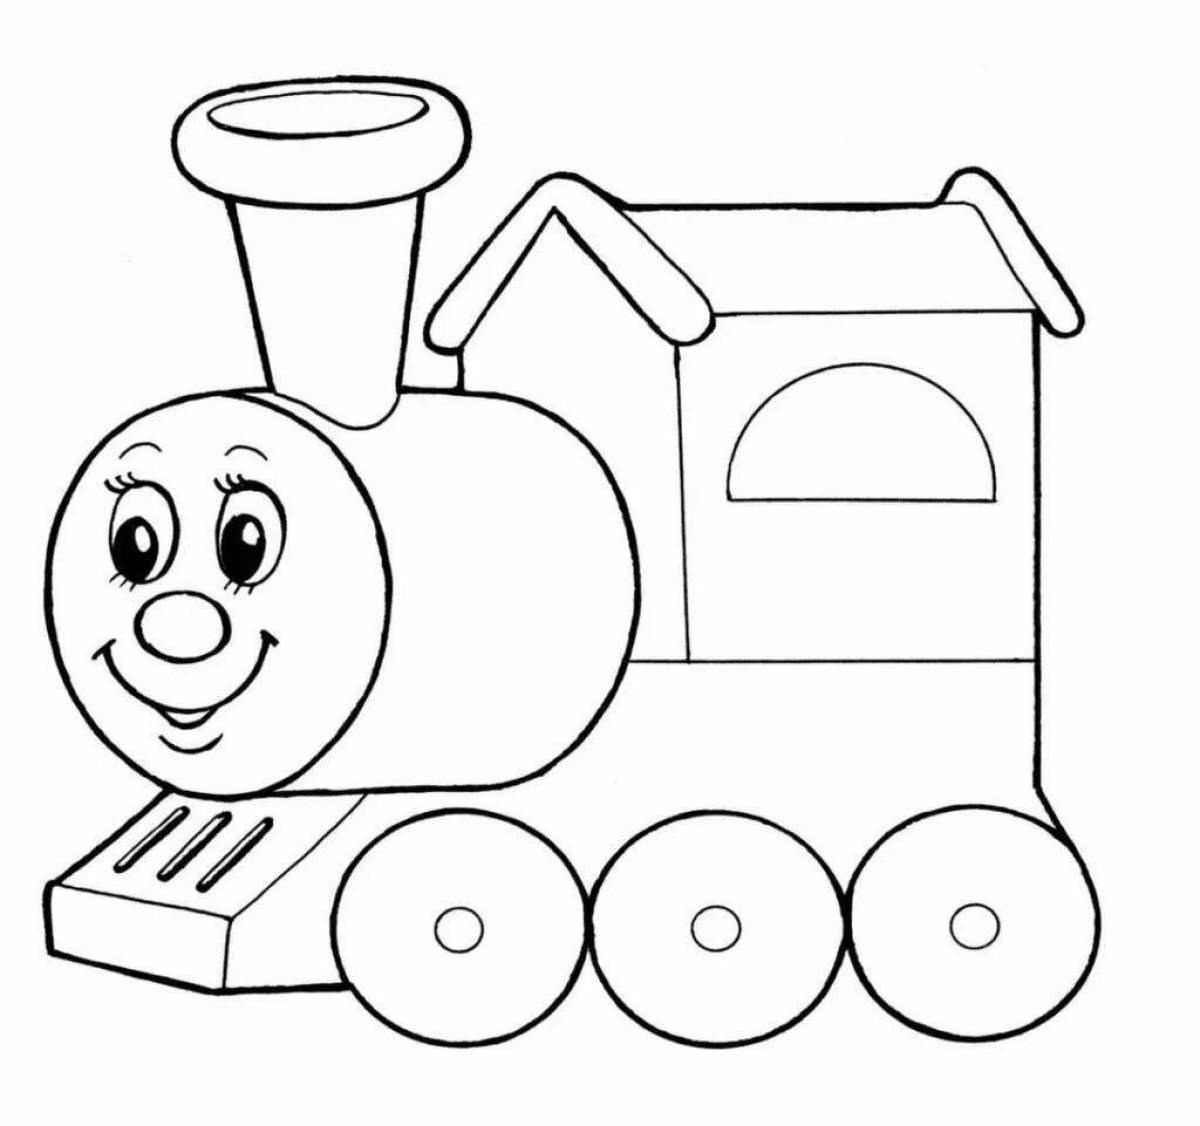 Steam locomotive for children #18